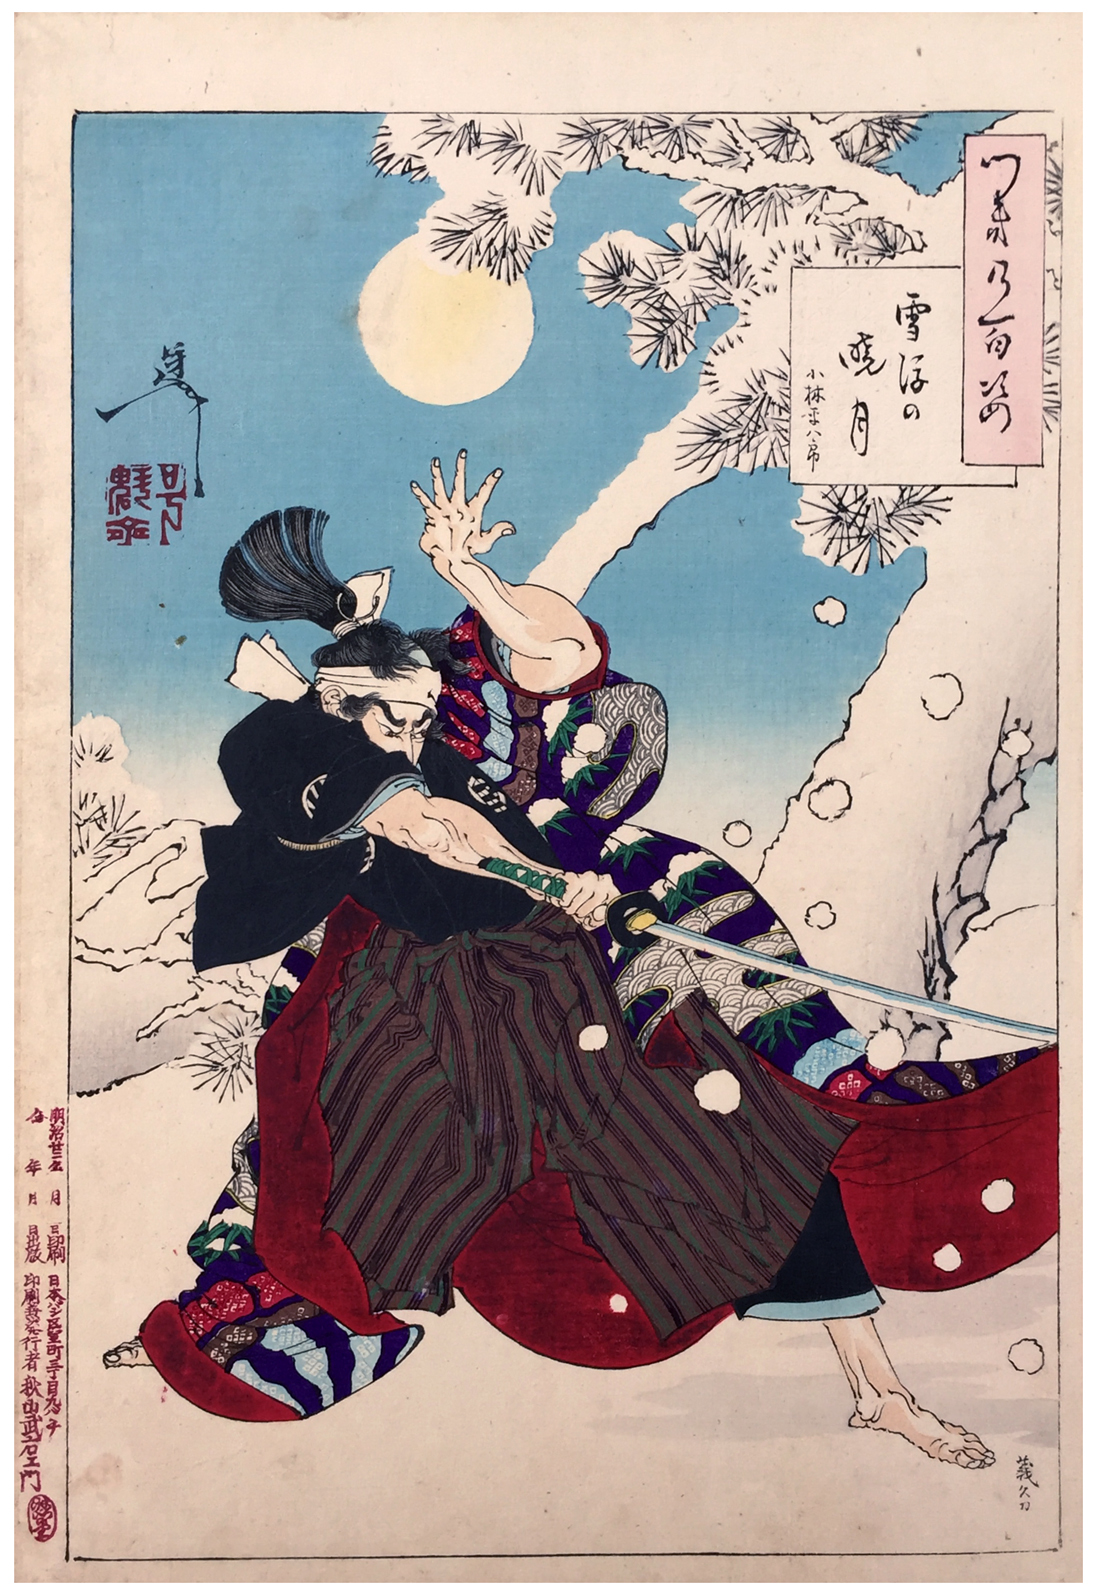 Seppu no Gyogetsu (Το φεγγάρι της αυγής και το χιόνι που πέφτει) by Tsukioka Yoshitoshi - 1889 